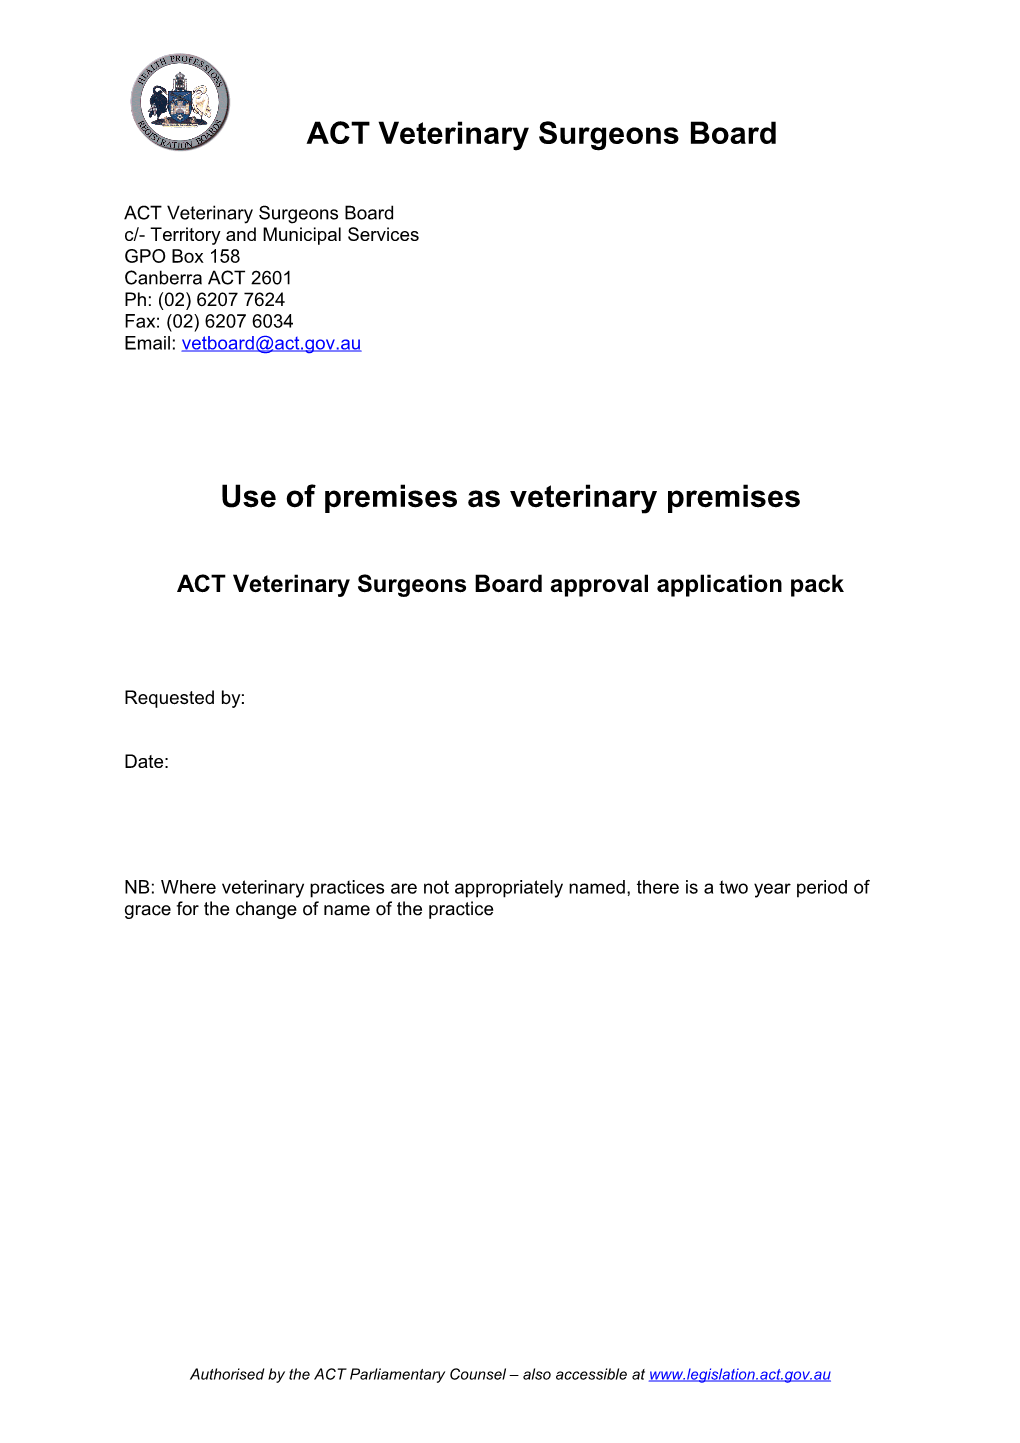 Use of Premises As Veterinary Premises